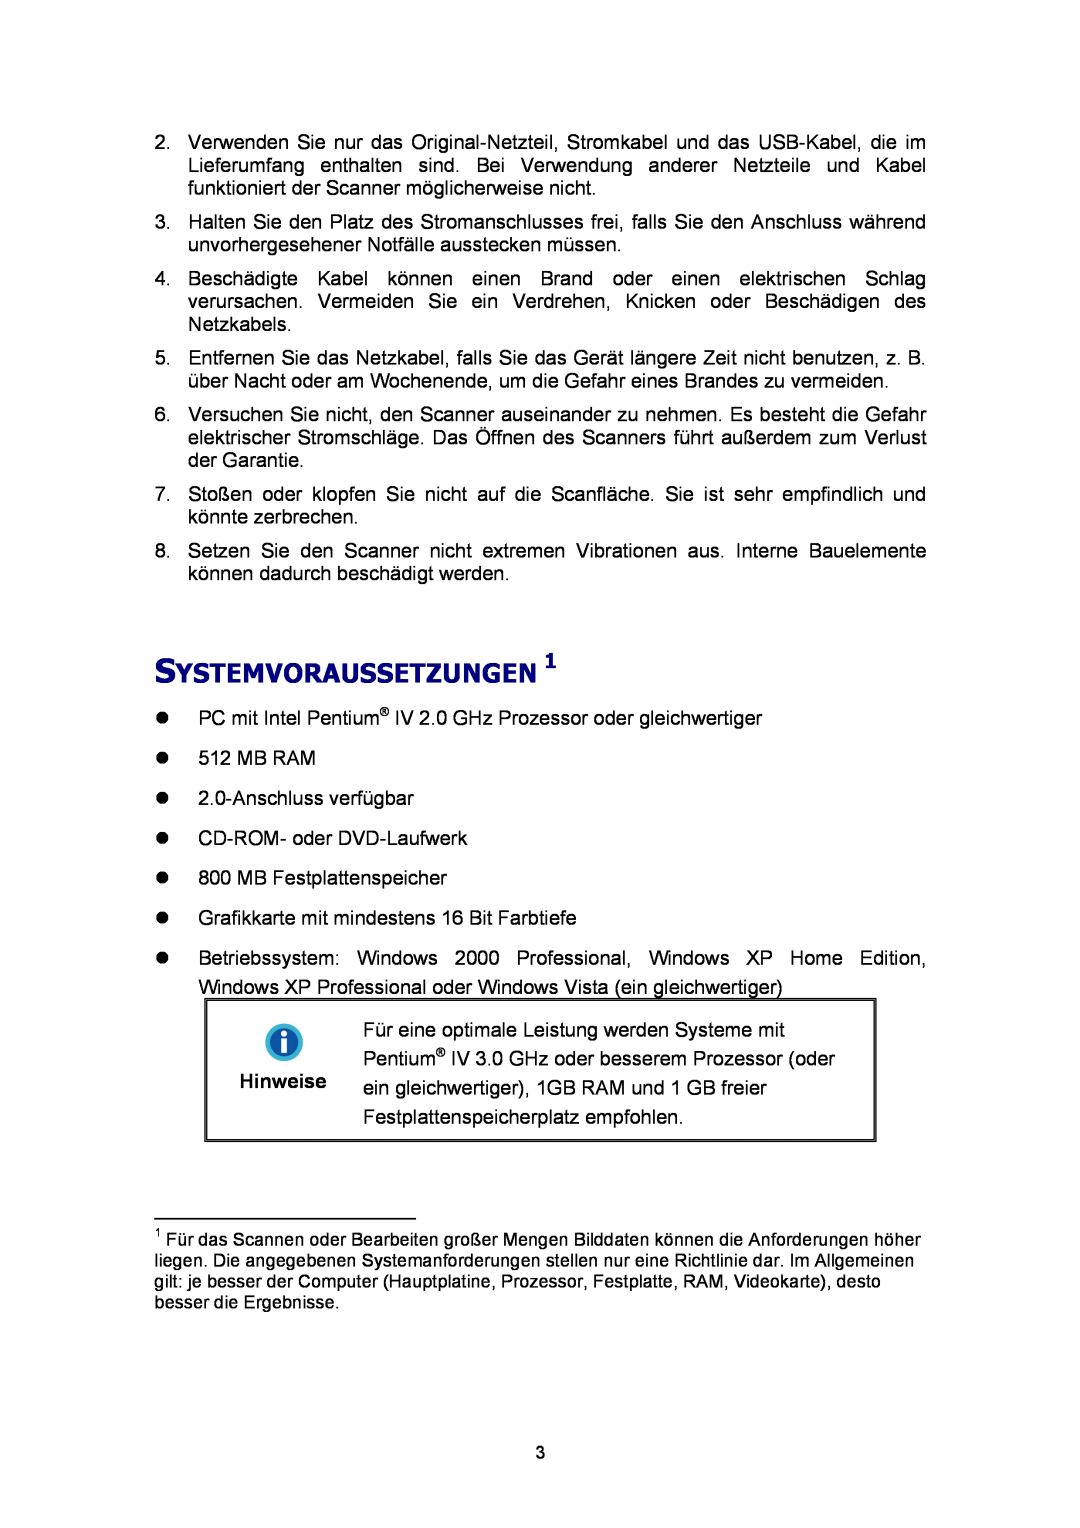 Plustek Scanner-Benutzerhandbuch, A360 manual Systemvoraussetzungen 